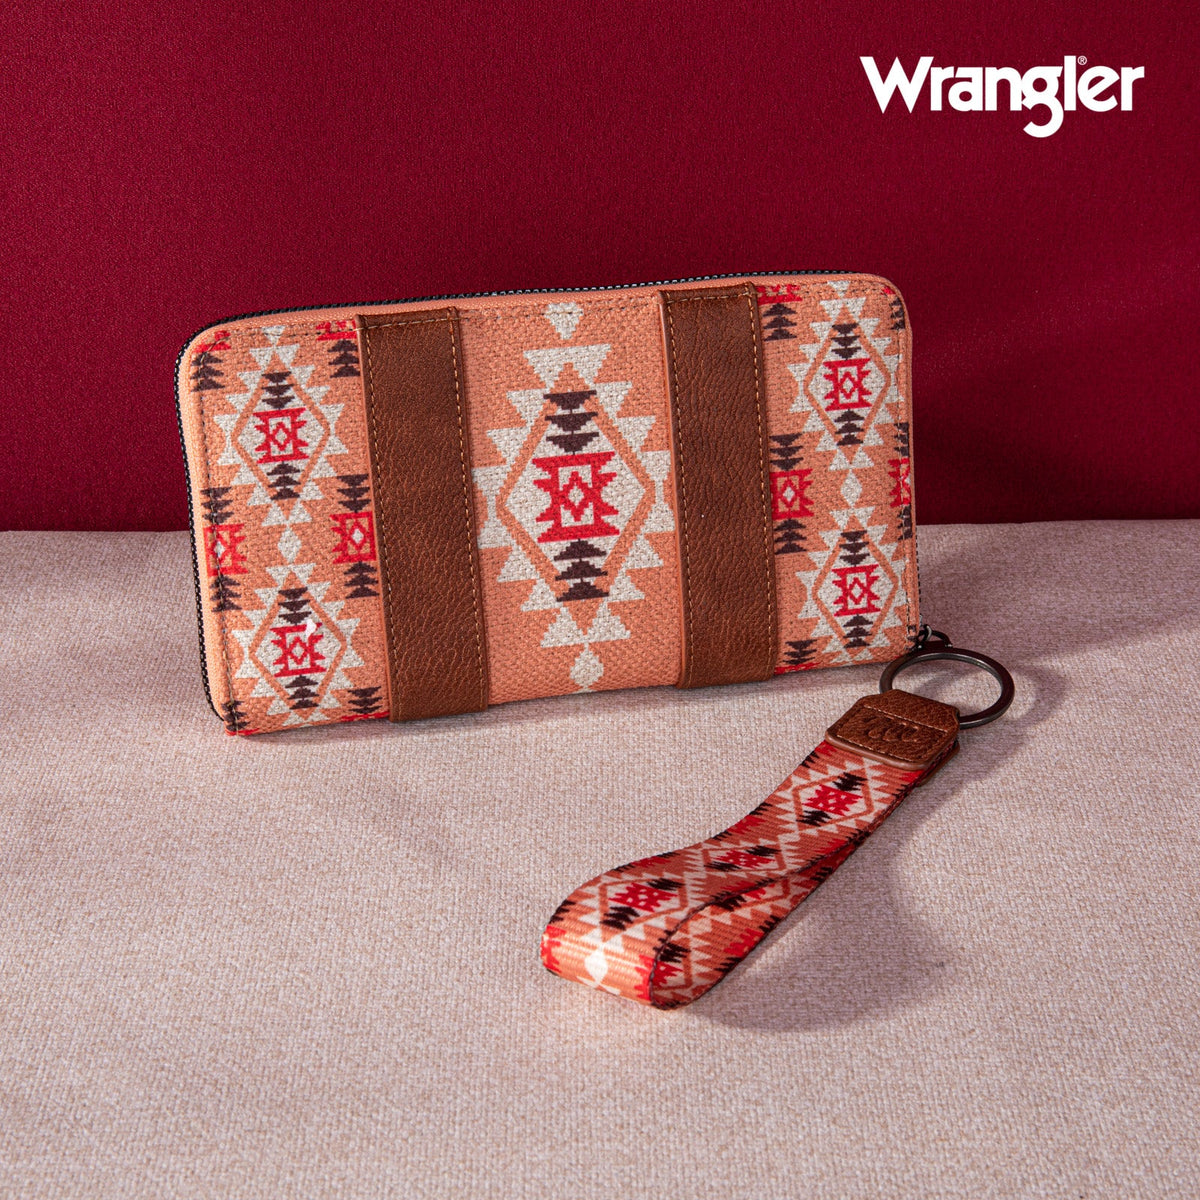 Wrangler Wallet - Orange Aztec